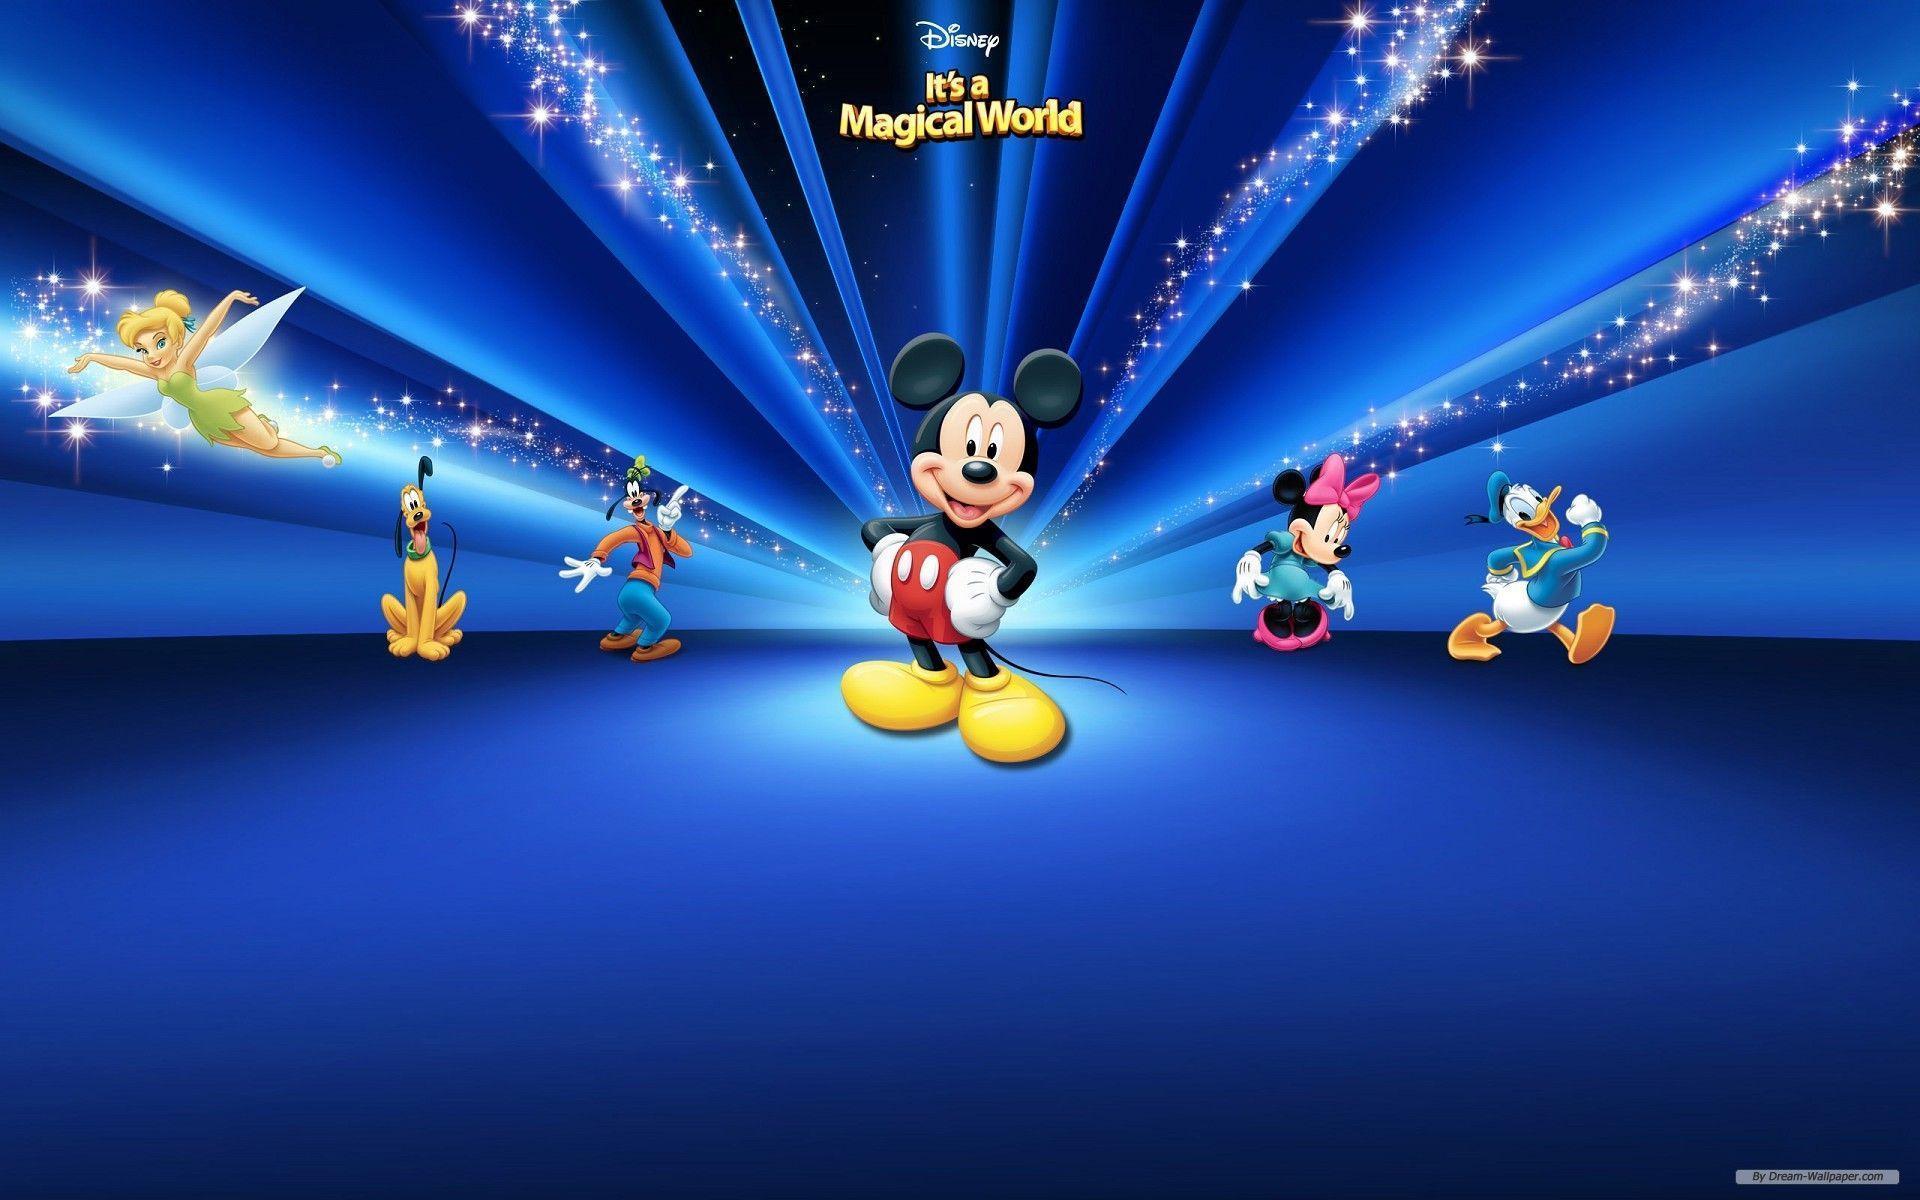 Hình nền Disney miễn phí cho desktop: Những hình nền Disney đáng yêu và tuyệt đẹp sẽ là món quà cho tất cả các fan yêu thích nhân vật hoạt hình Disney. Tải về miễn phí và cảm nhận sự kỳ diệu mà chỉ có Disney mang đến.